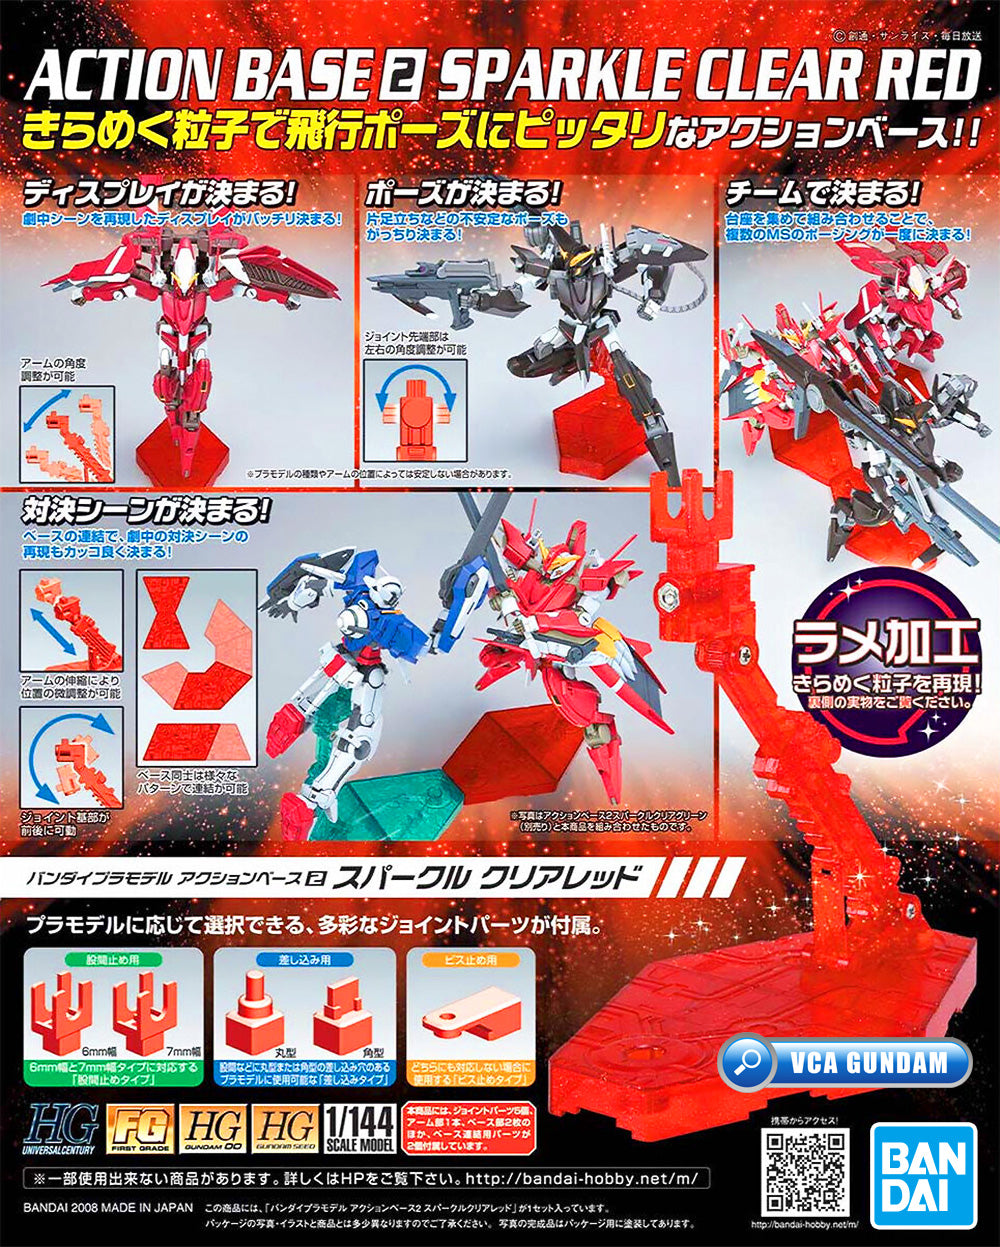 Bandai 展示动作底座 2 闪光透明红色适用于塑料模型动作玩具 VCA 高达新加坡